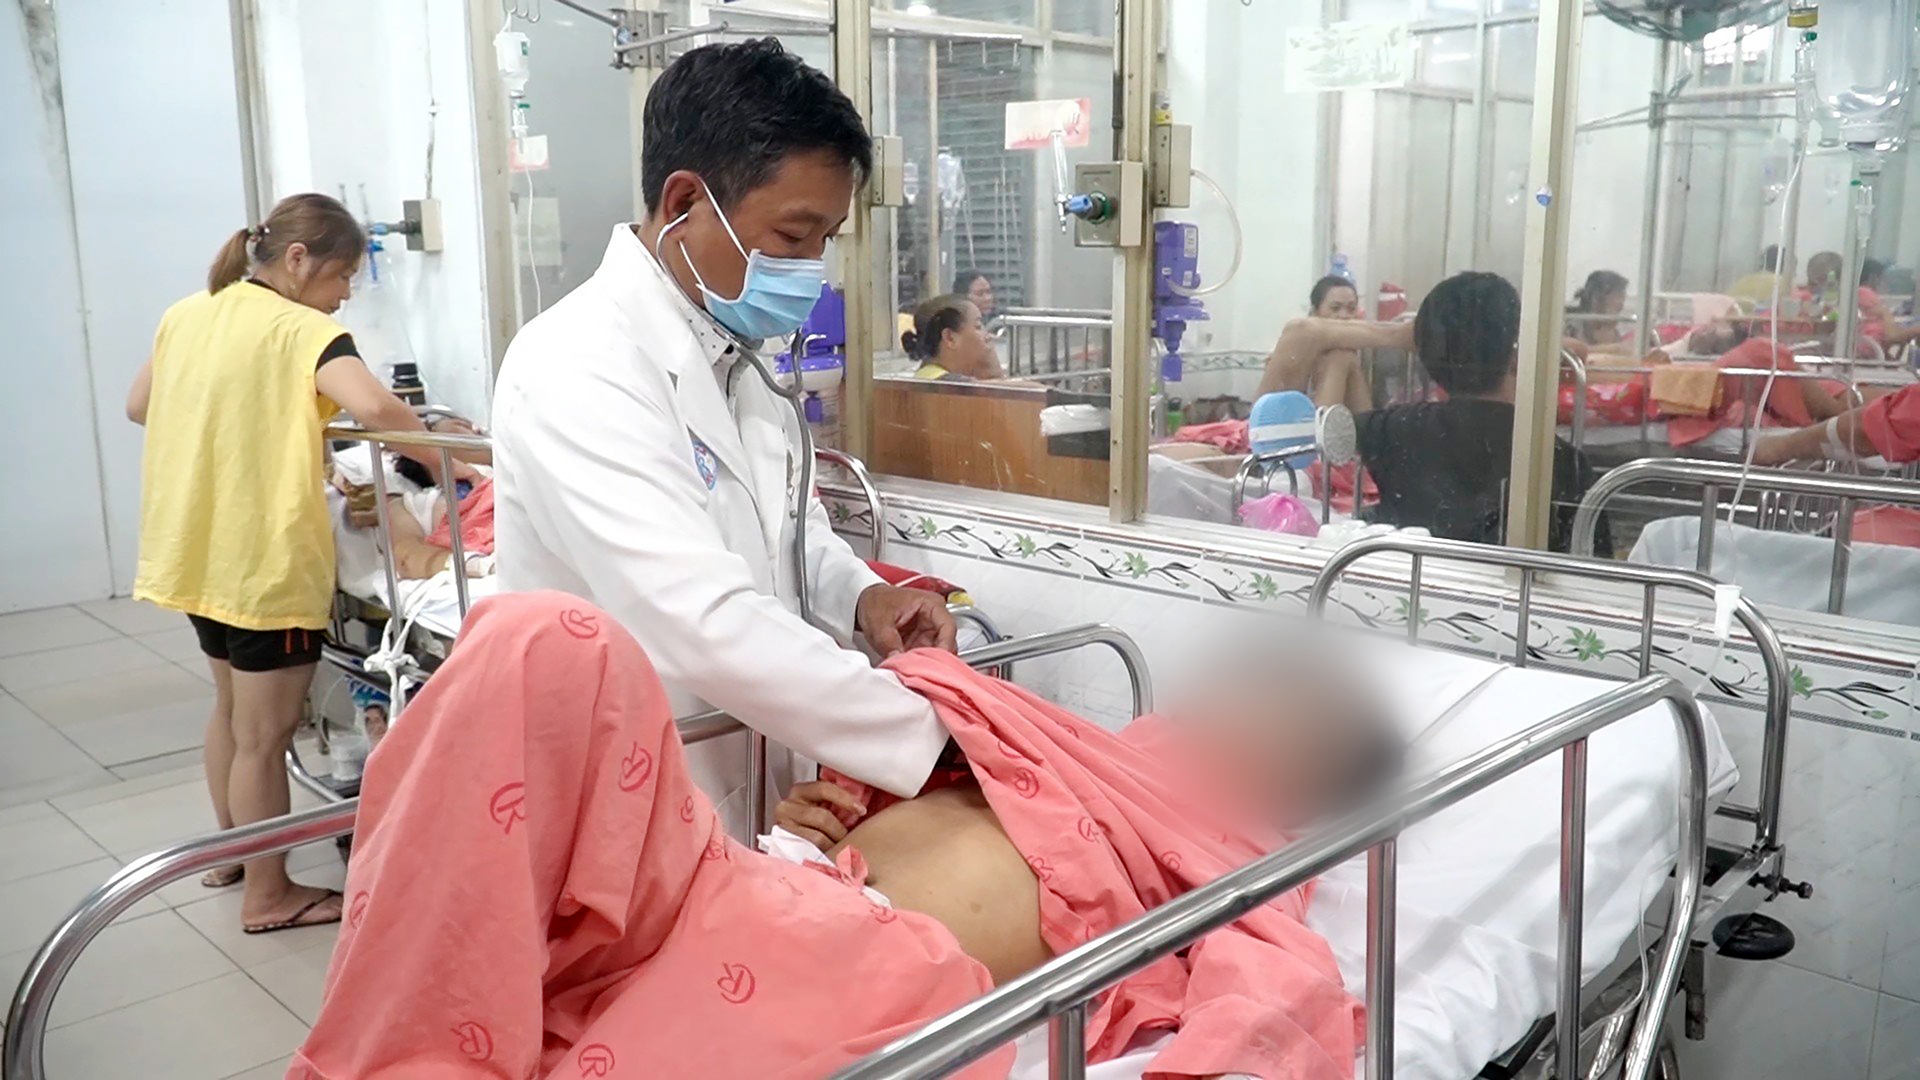 Bác sĩ chuyên khoa 1 Trần Minh Vinh, Khoa Chấn thương sọ não, Bệnh viện Chợ Rẫy thăm khám cho thí sinh bị tai nạn giao thông. Ảnh: BVCC.